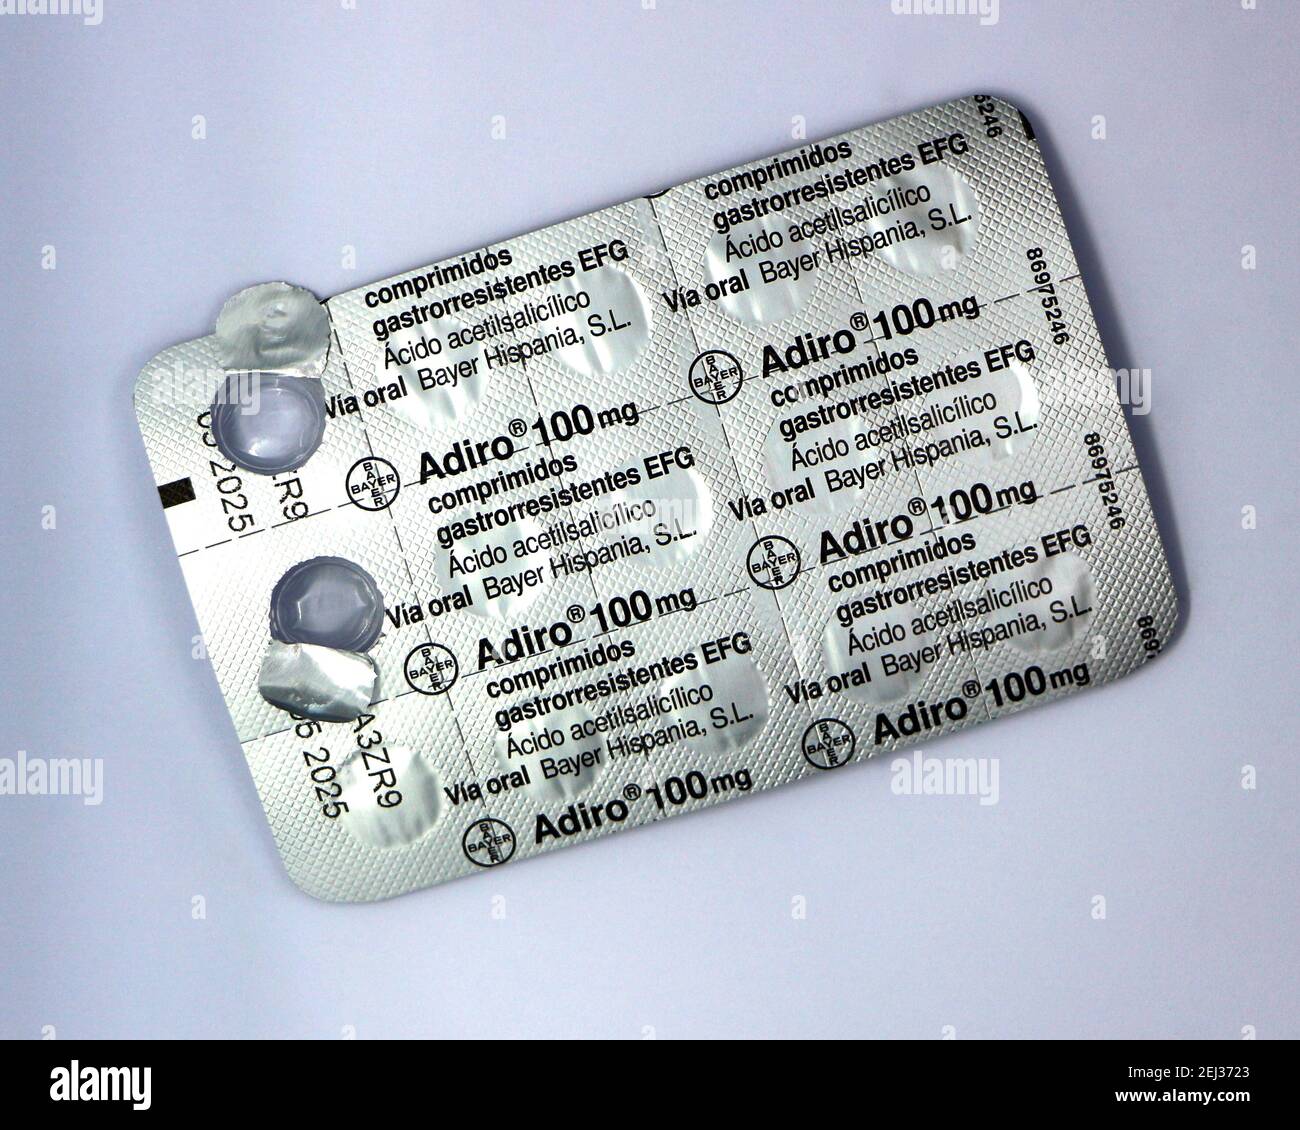 Foto von Bayer Adiro 100 mg Aspirin Medikationstabletten Teil gebrauchte  Folie und Plastikverpackung hält 15 Tabletten vor weißem Hintergrund  Stockfotografie - Alamy